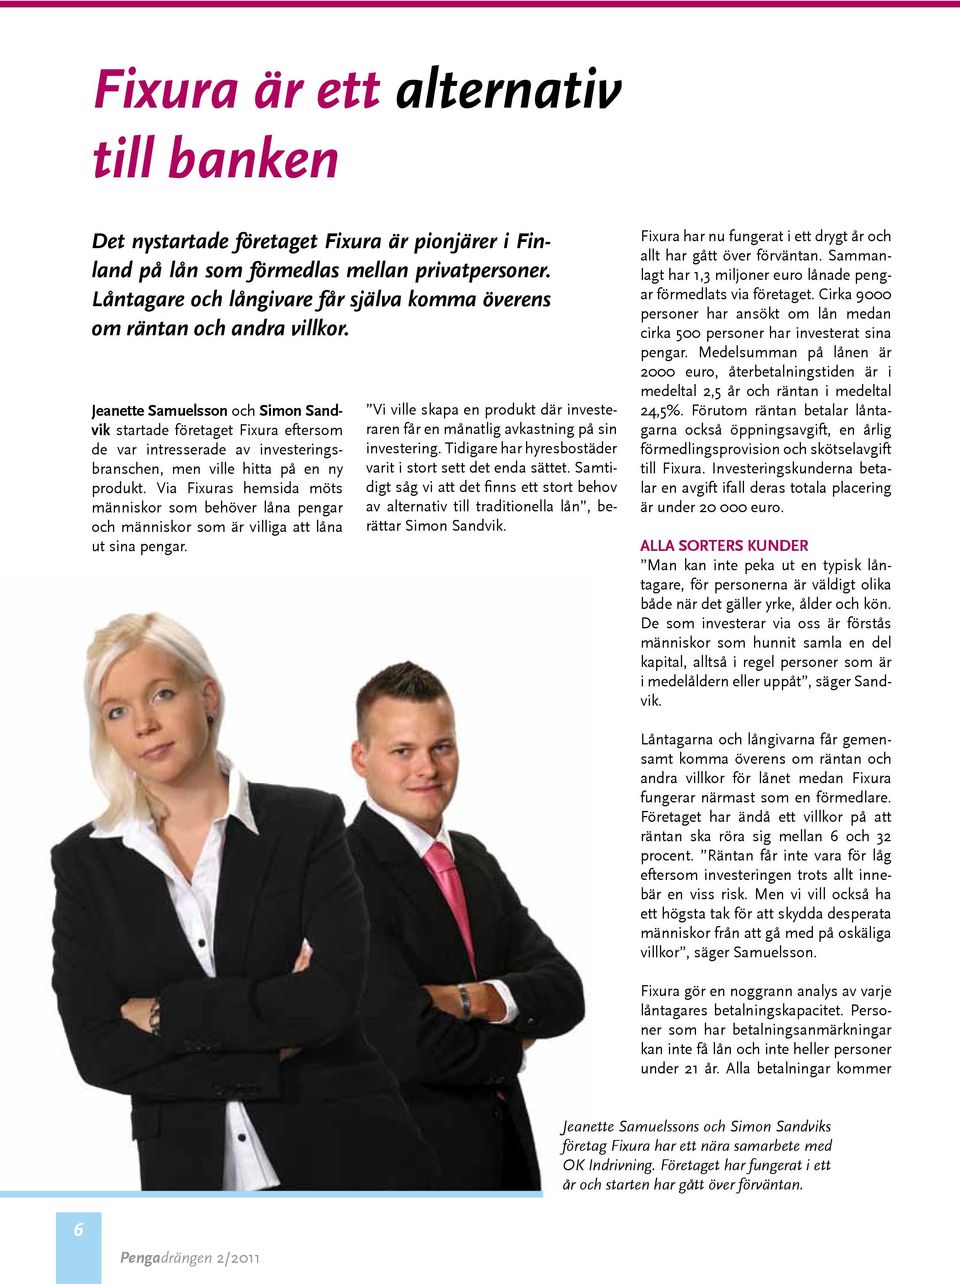 Jeanette Samuelsson och Simon Sandvik startade företaget Fixura eftersom de var intresserade av investeringsbranschen, men ville hitta på en ny produkt.